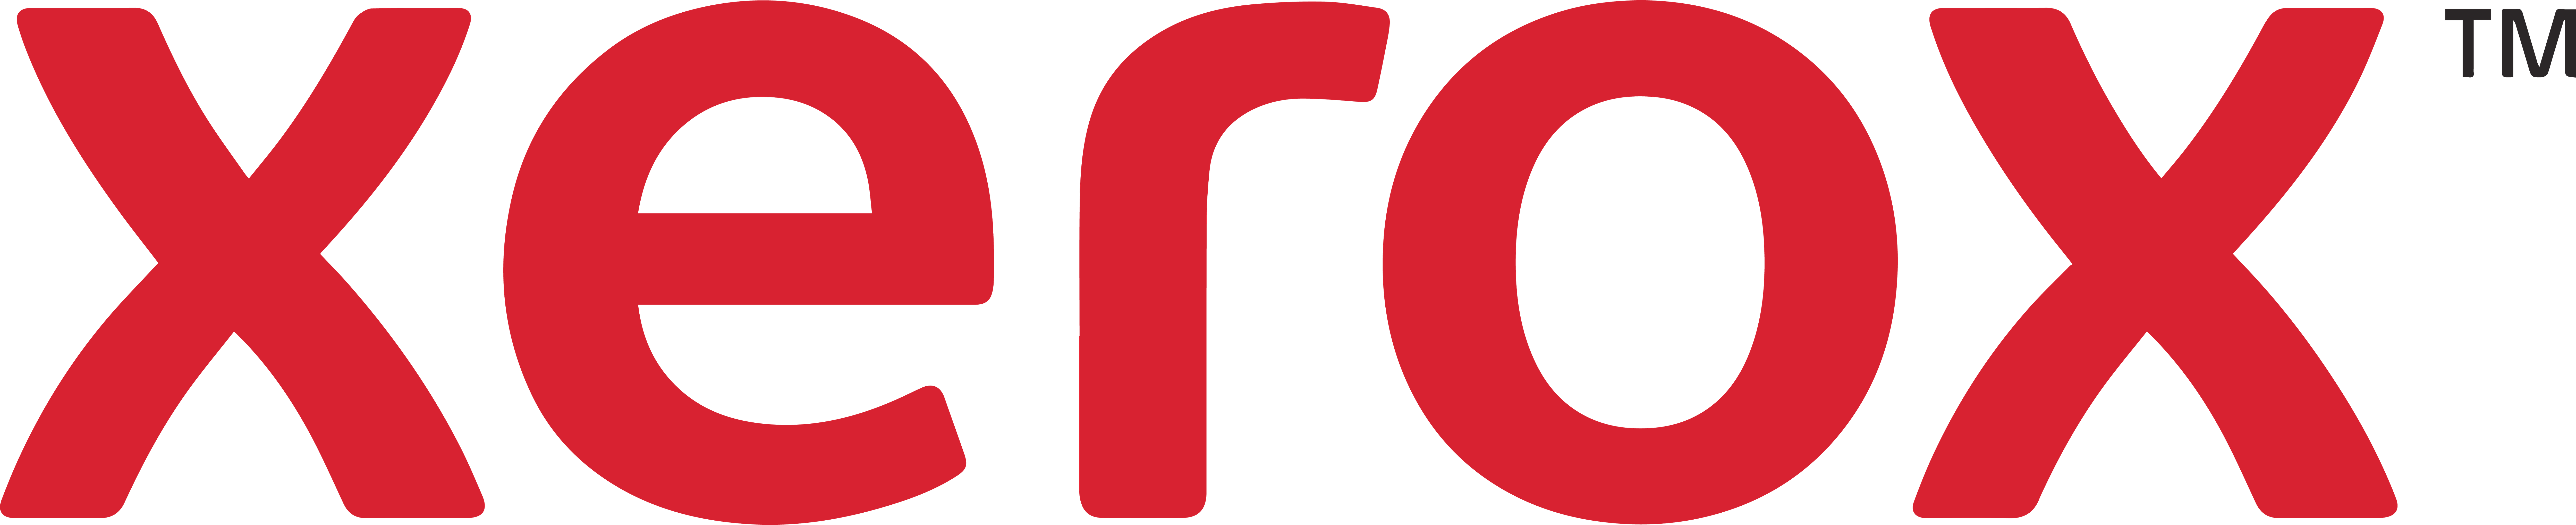 alto digital logo